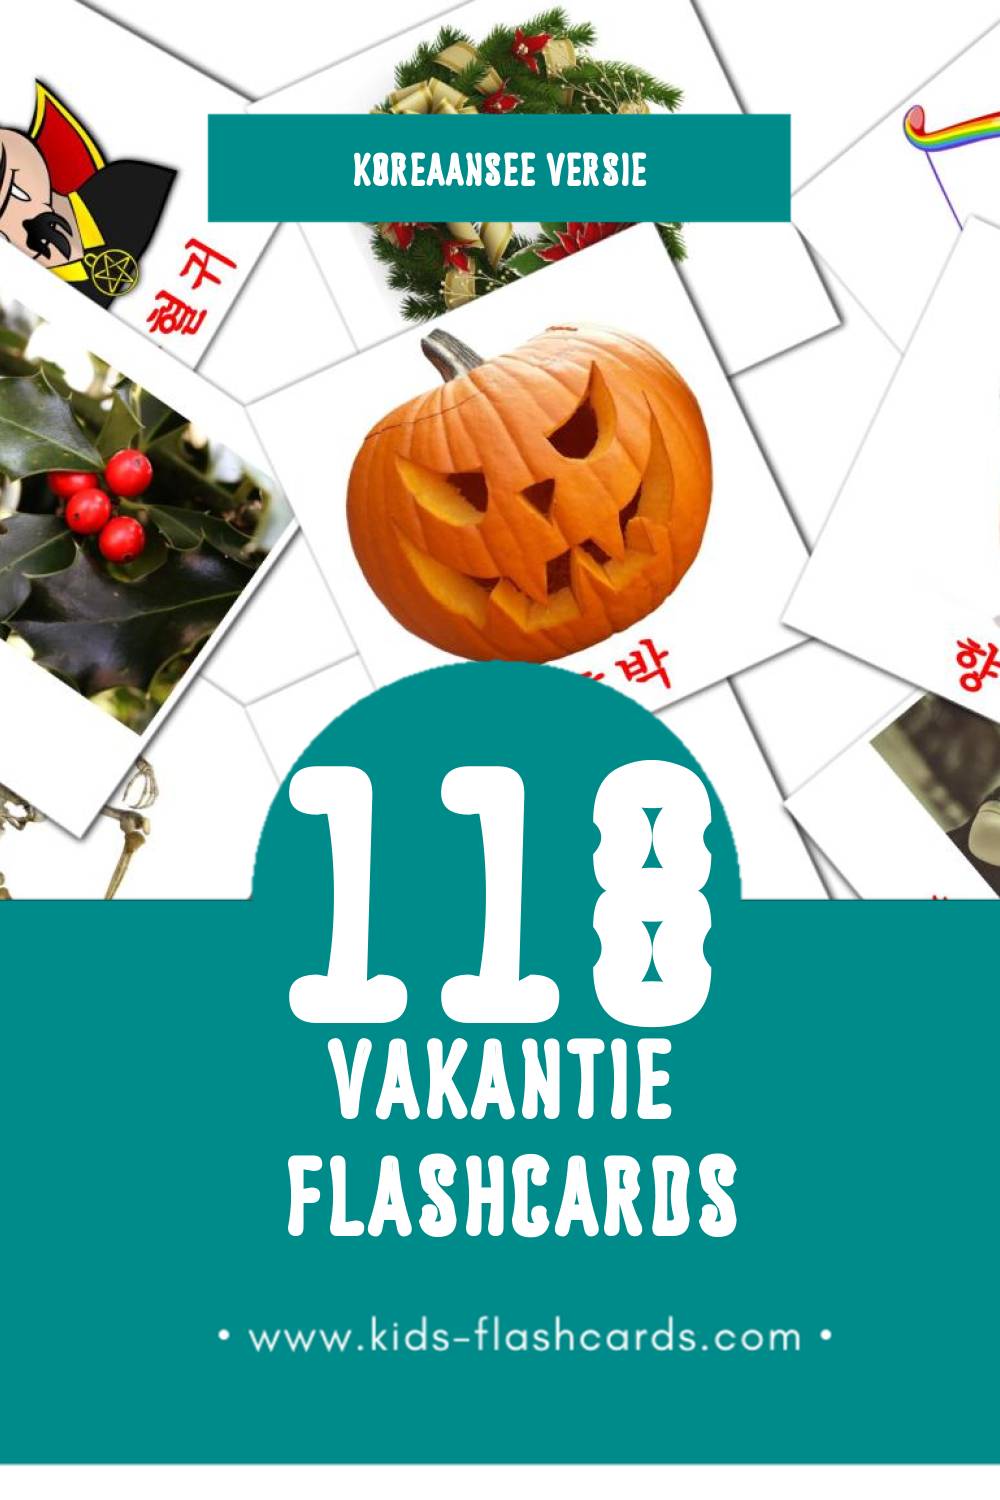 Visuele 휴가 Flashcards voor Kleuters (118 kaarten in het Koreaanse)